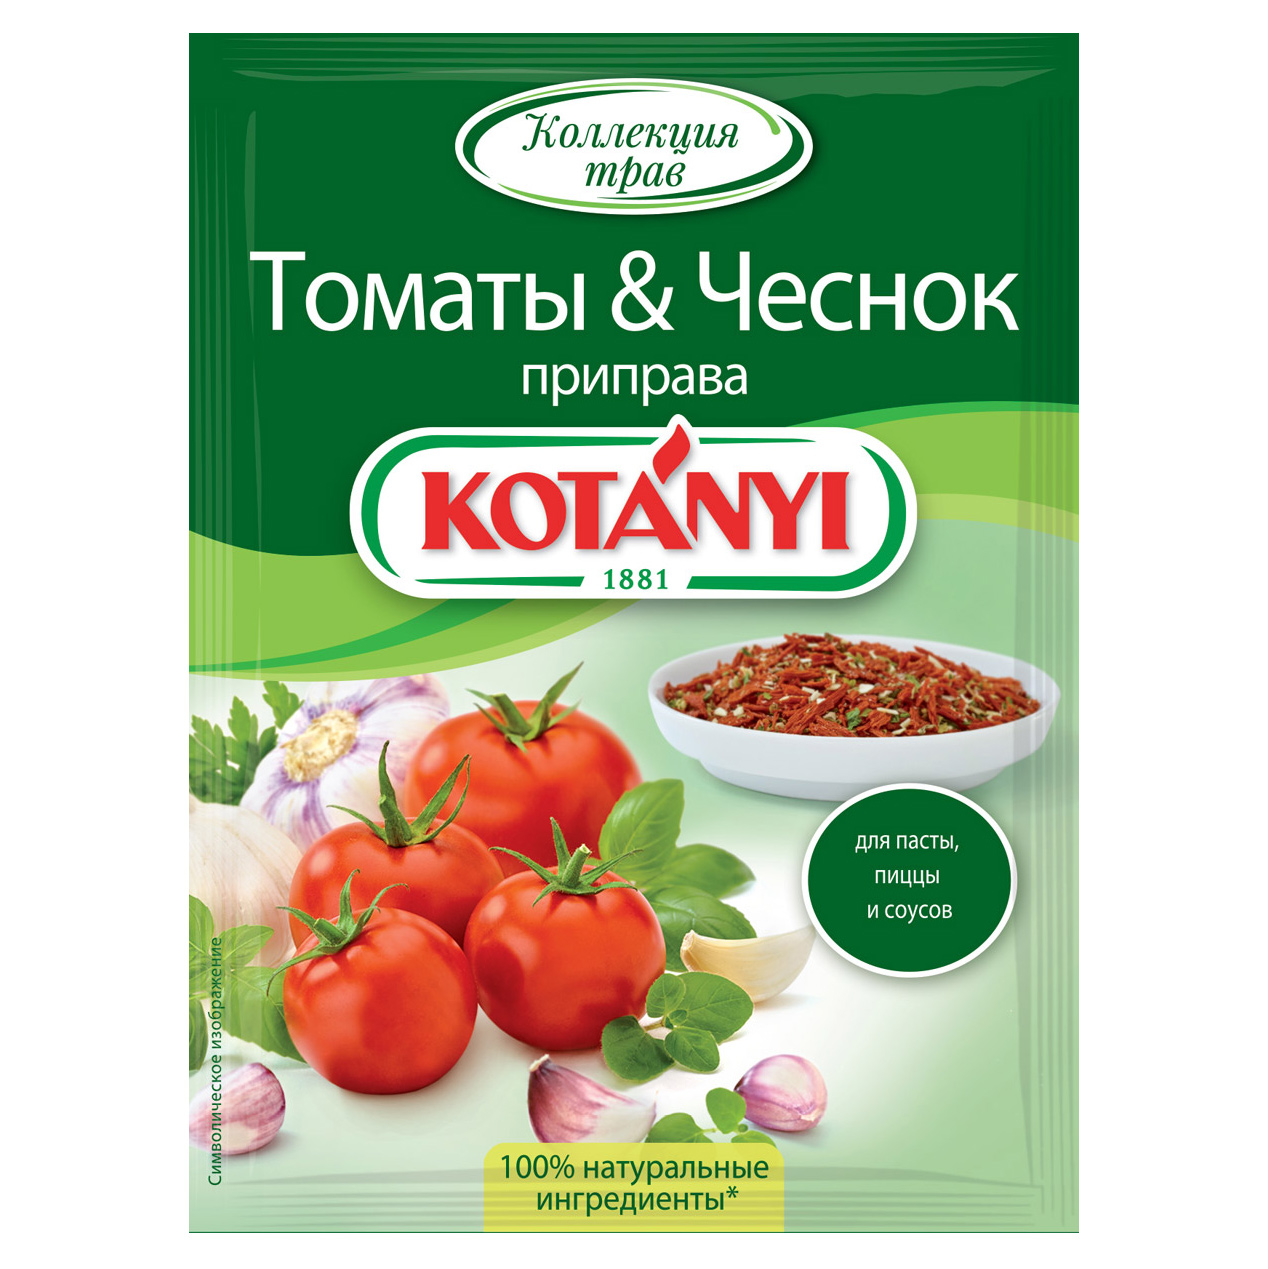 Приправа Kotanyi Томаты & чеснок 20 г приправа томаты и чеснок kotanyi 20 г